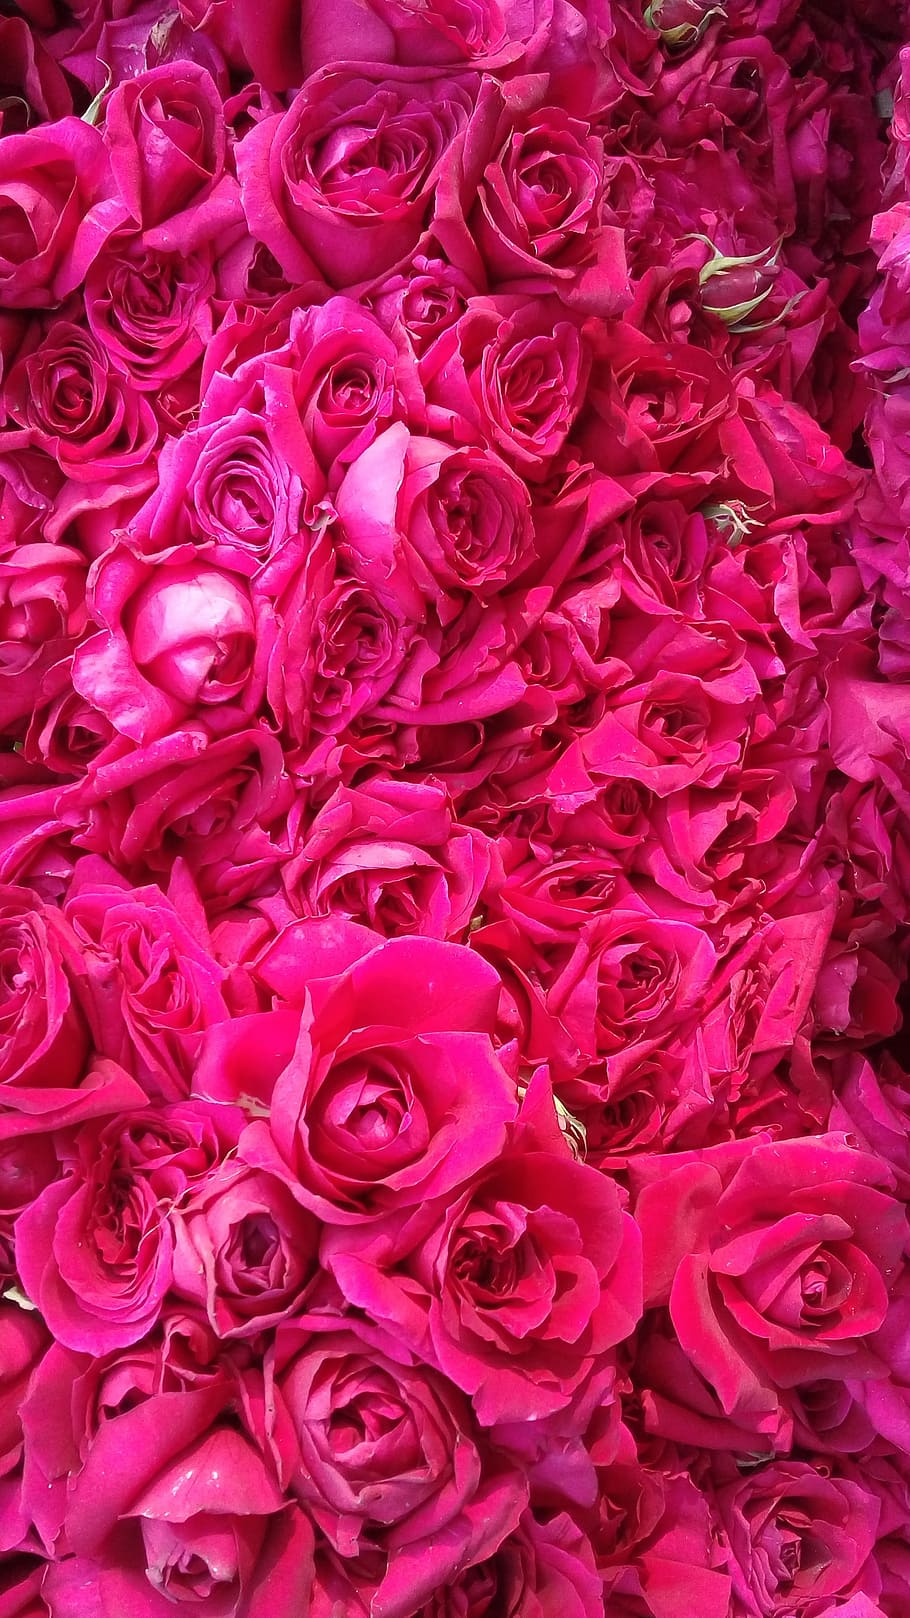 rose, flower, floral, petal, color, full frame, backgrounds, rose - flower, pink color, beauty in nature